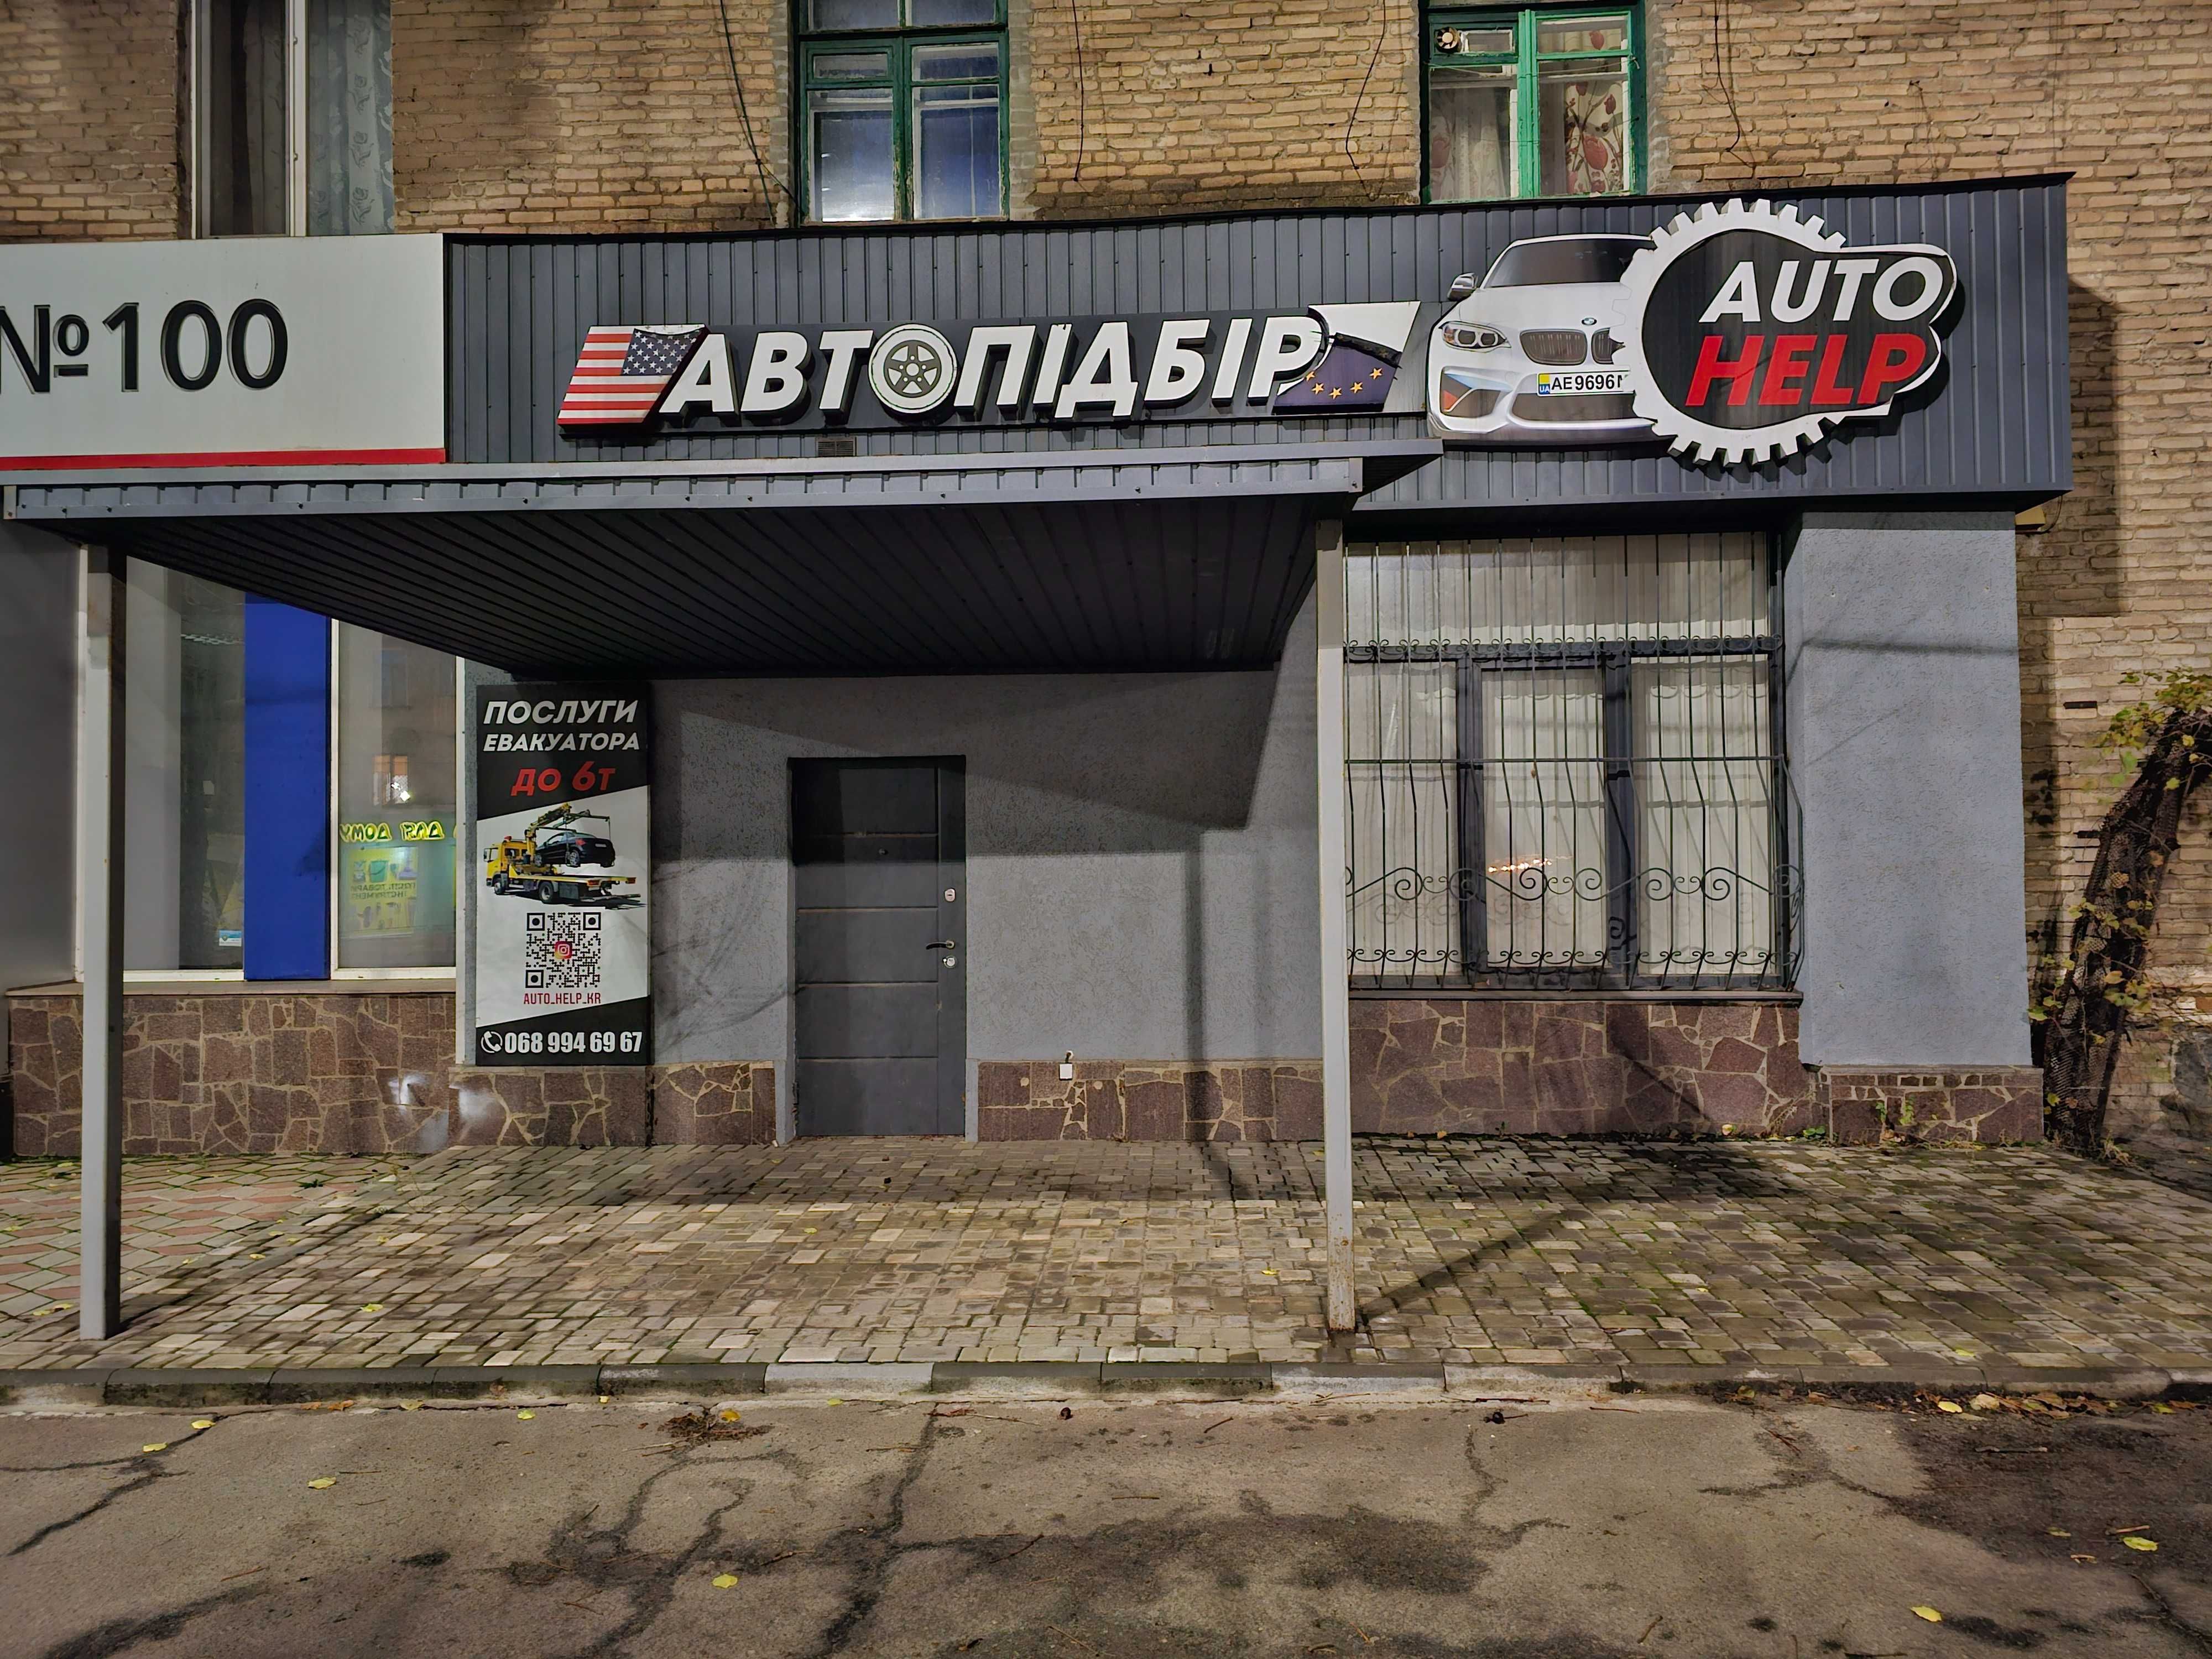 Продажа/ обмен на авто, нежилое помещение, после ремонта, ул. Ракитина